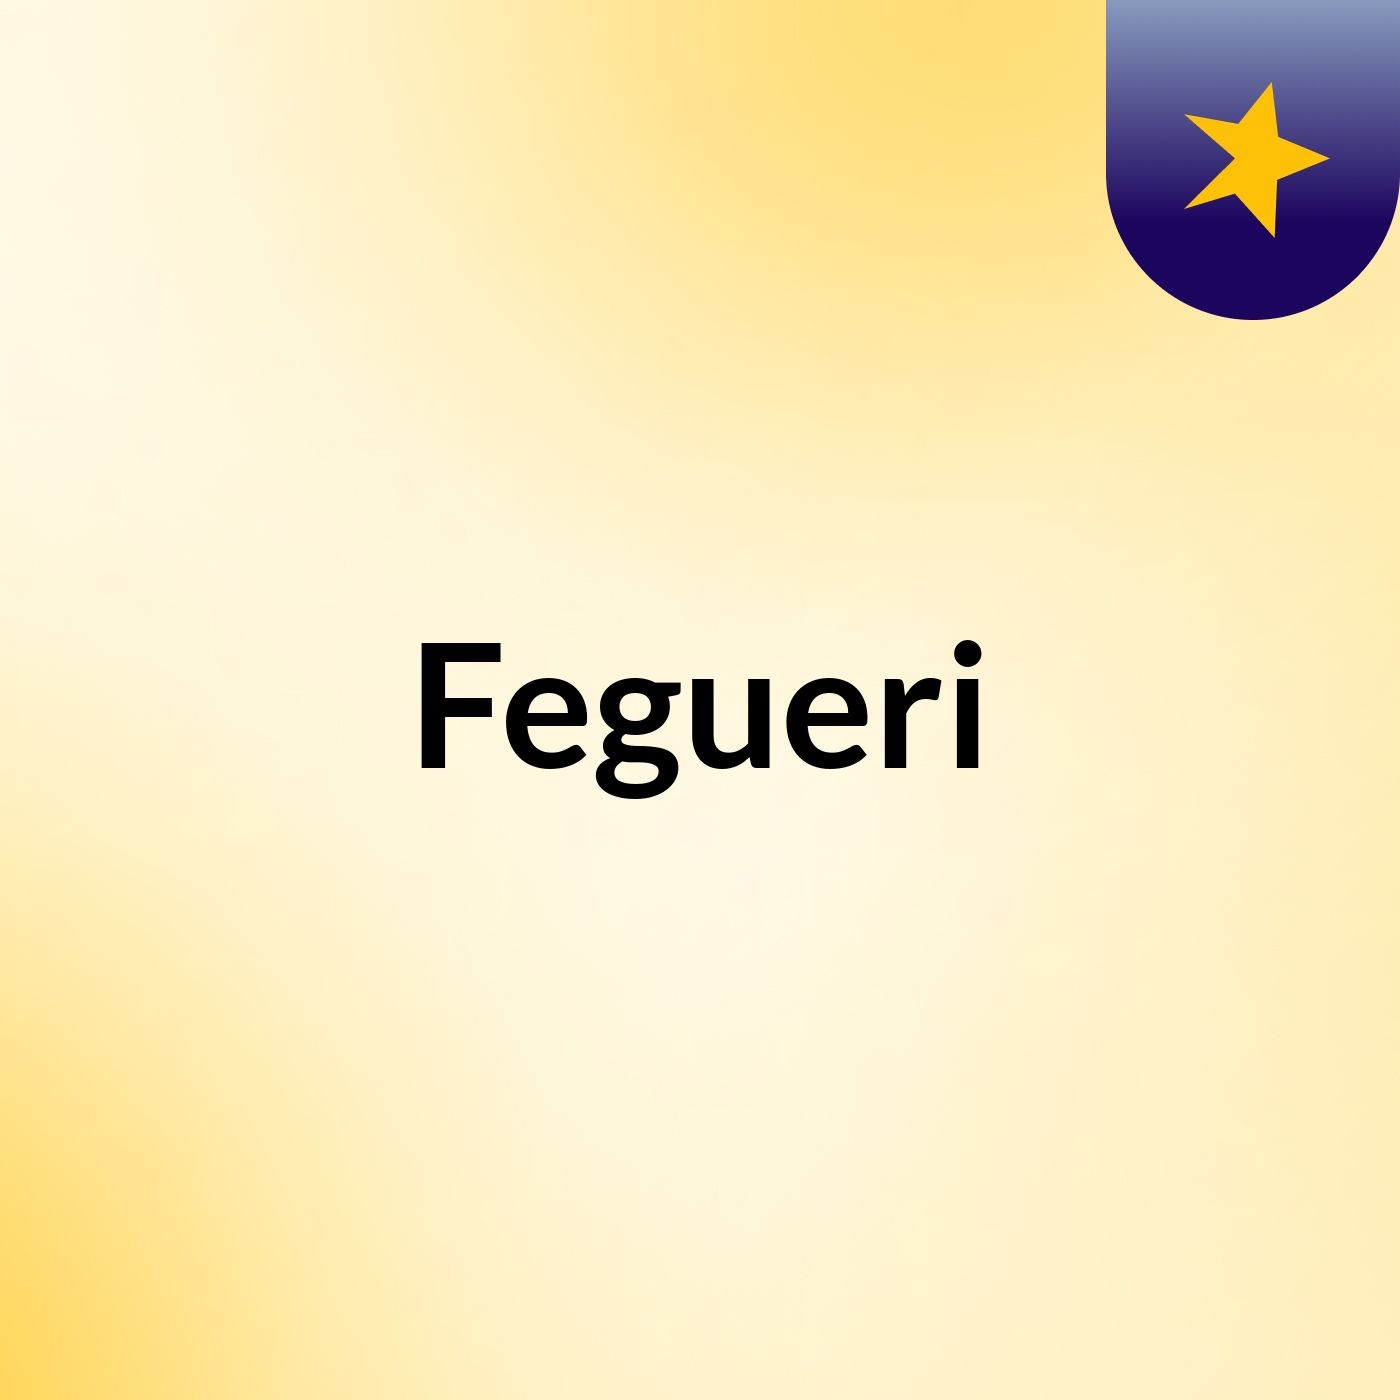 Fegueri